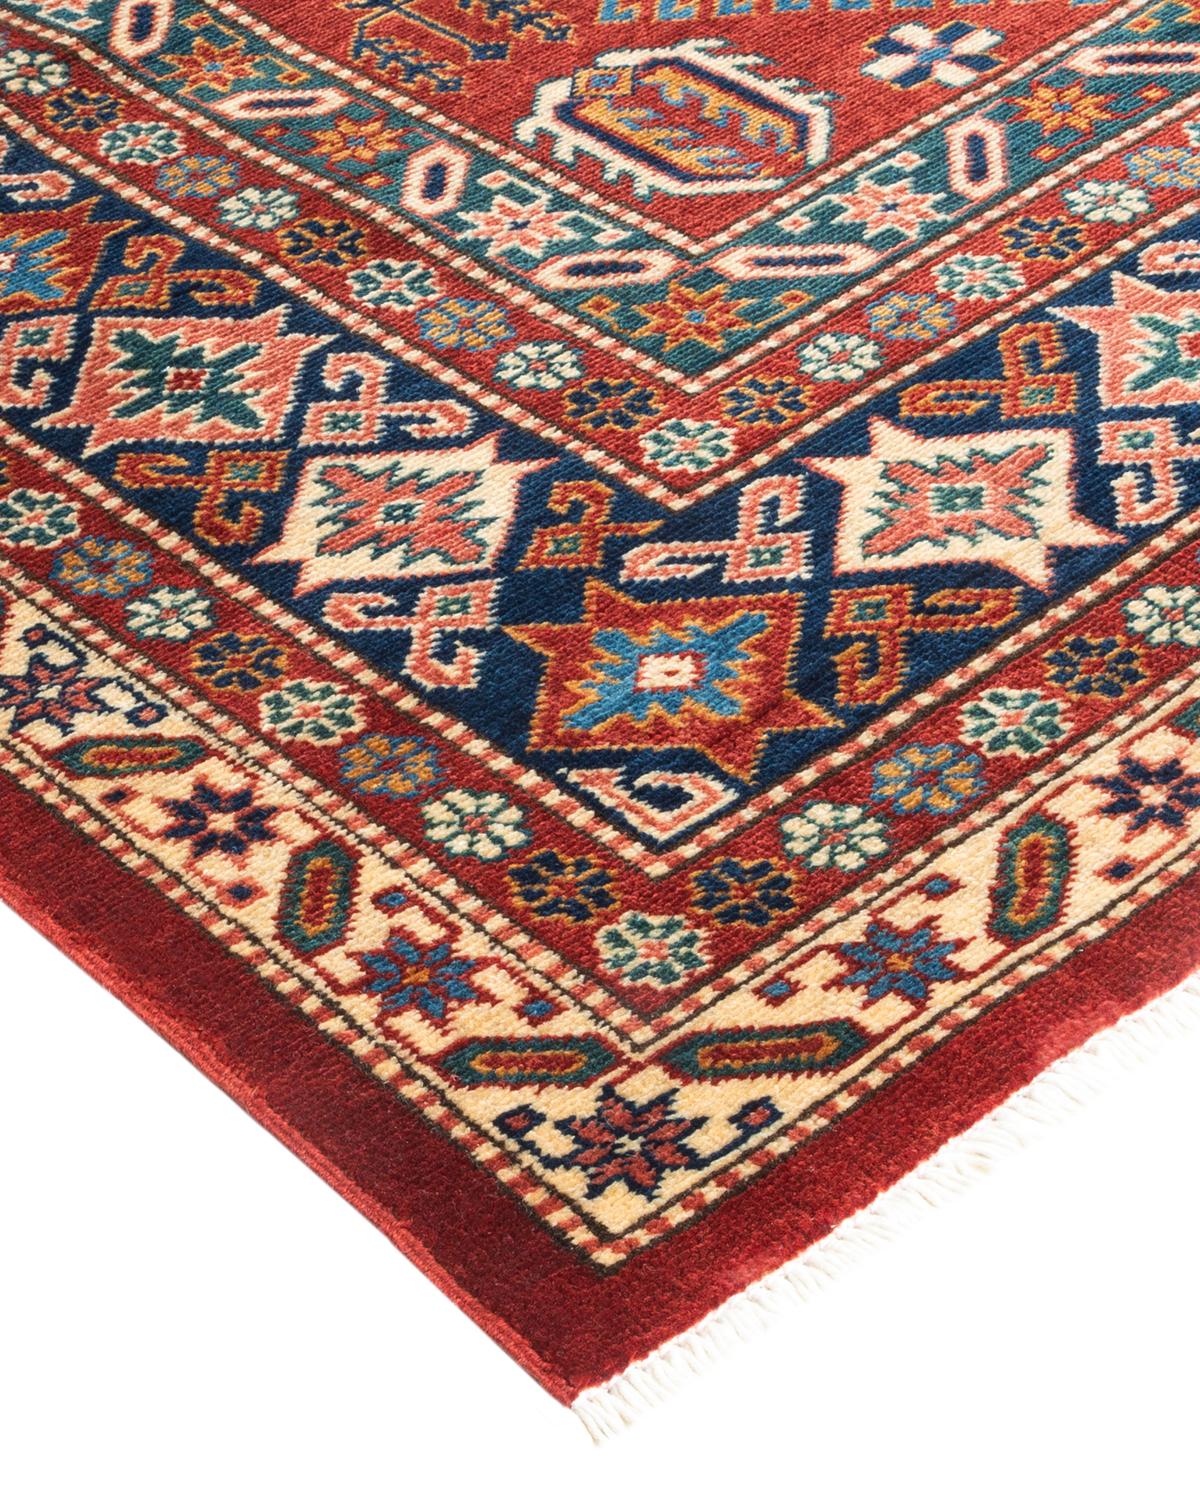 La riche tradition textile de l'Afrique occidentale a inspiré la collection Tribal de tapis noués à la main. Incorporant un mélange de motifs géométriques, dans des palettes allant de la terre à la vivacité, ces tapis apportent un sentiment